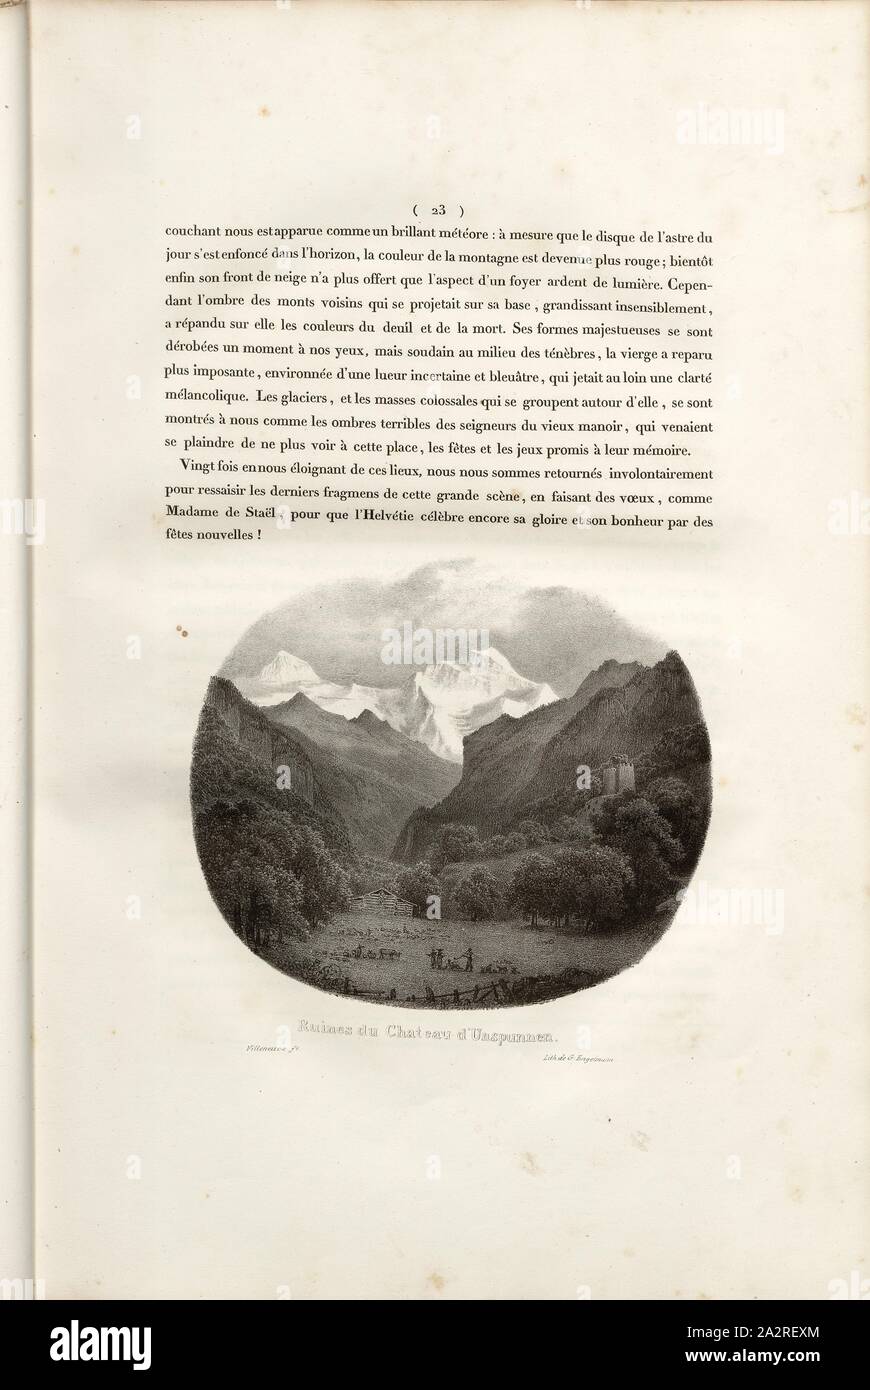 Ruins of Unspunnen Castle, Landscape with ruins of Unspunnen, signed: Villeneuve, G. Engelmann, lithograph, plate 2, p. 23 (vol. 2, part 1), Villeneuve, M. (ft.); Engelmann, Godefroy (lith.), 1823, Hilaire Léon Sazerac, Godefroy Engelmann: Lettres sur la Suisse (...). Paris: [s.n.], 1823-1832 Stock Photo